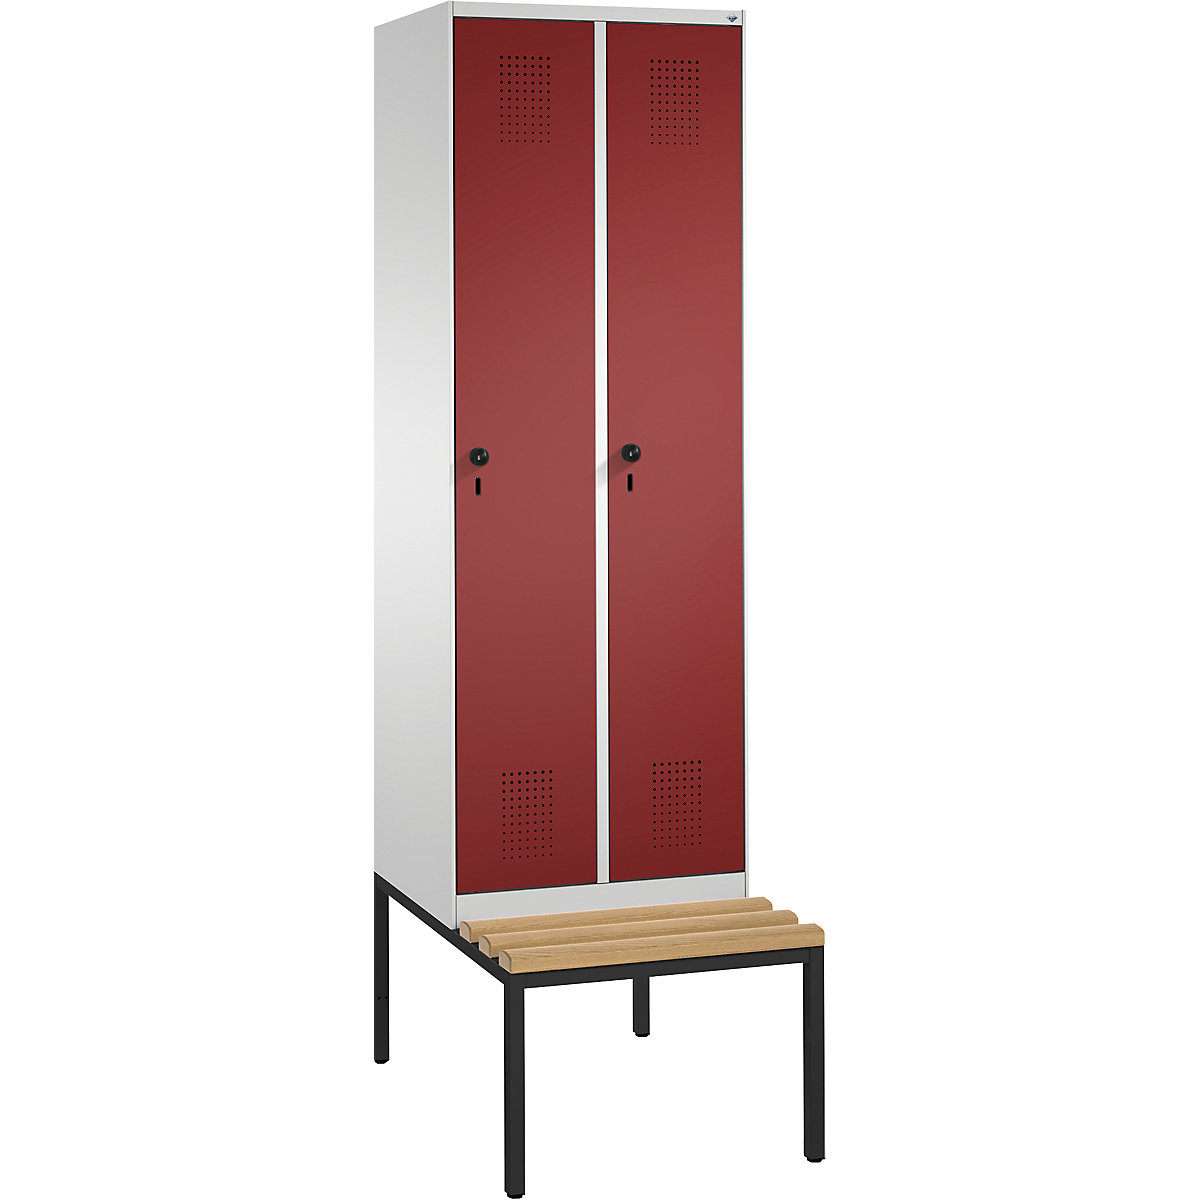 Garderobna omara EVOLO, s klopjo – C+P, 2 razdelka, širina razdelka 300 mm, svetlo siva / rubinasto rdeča-10